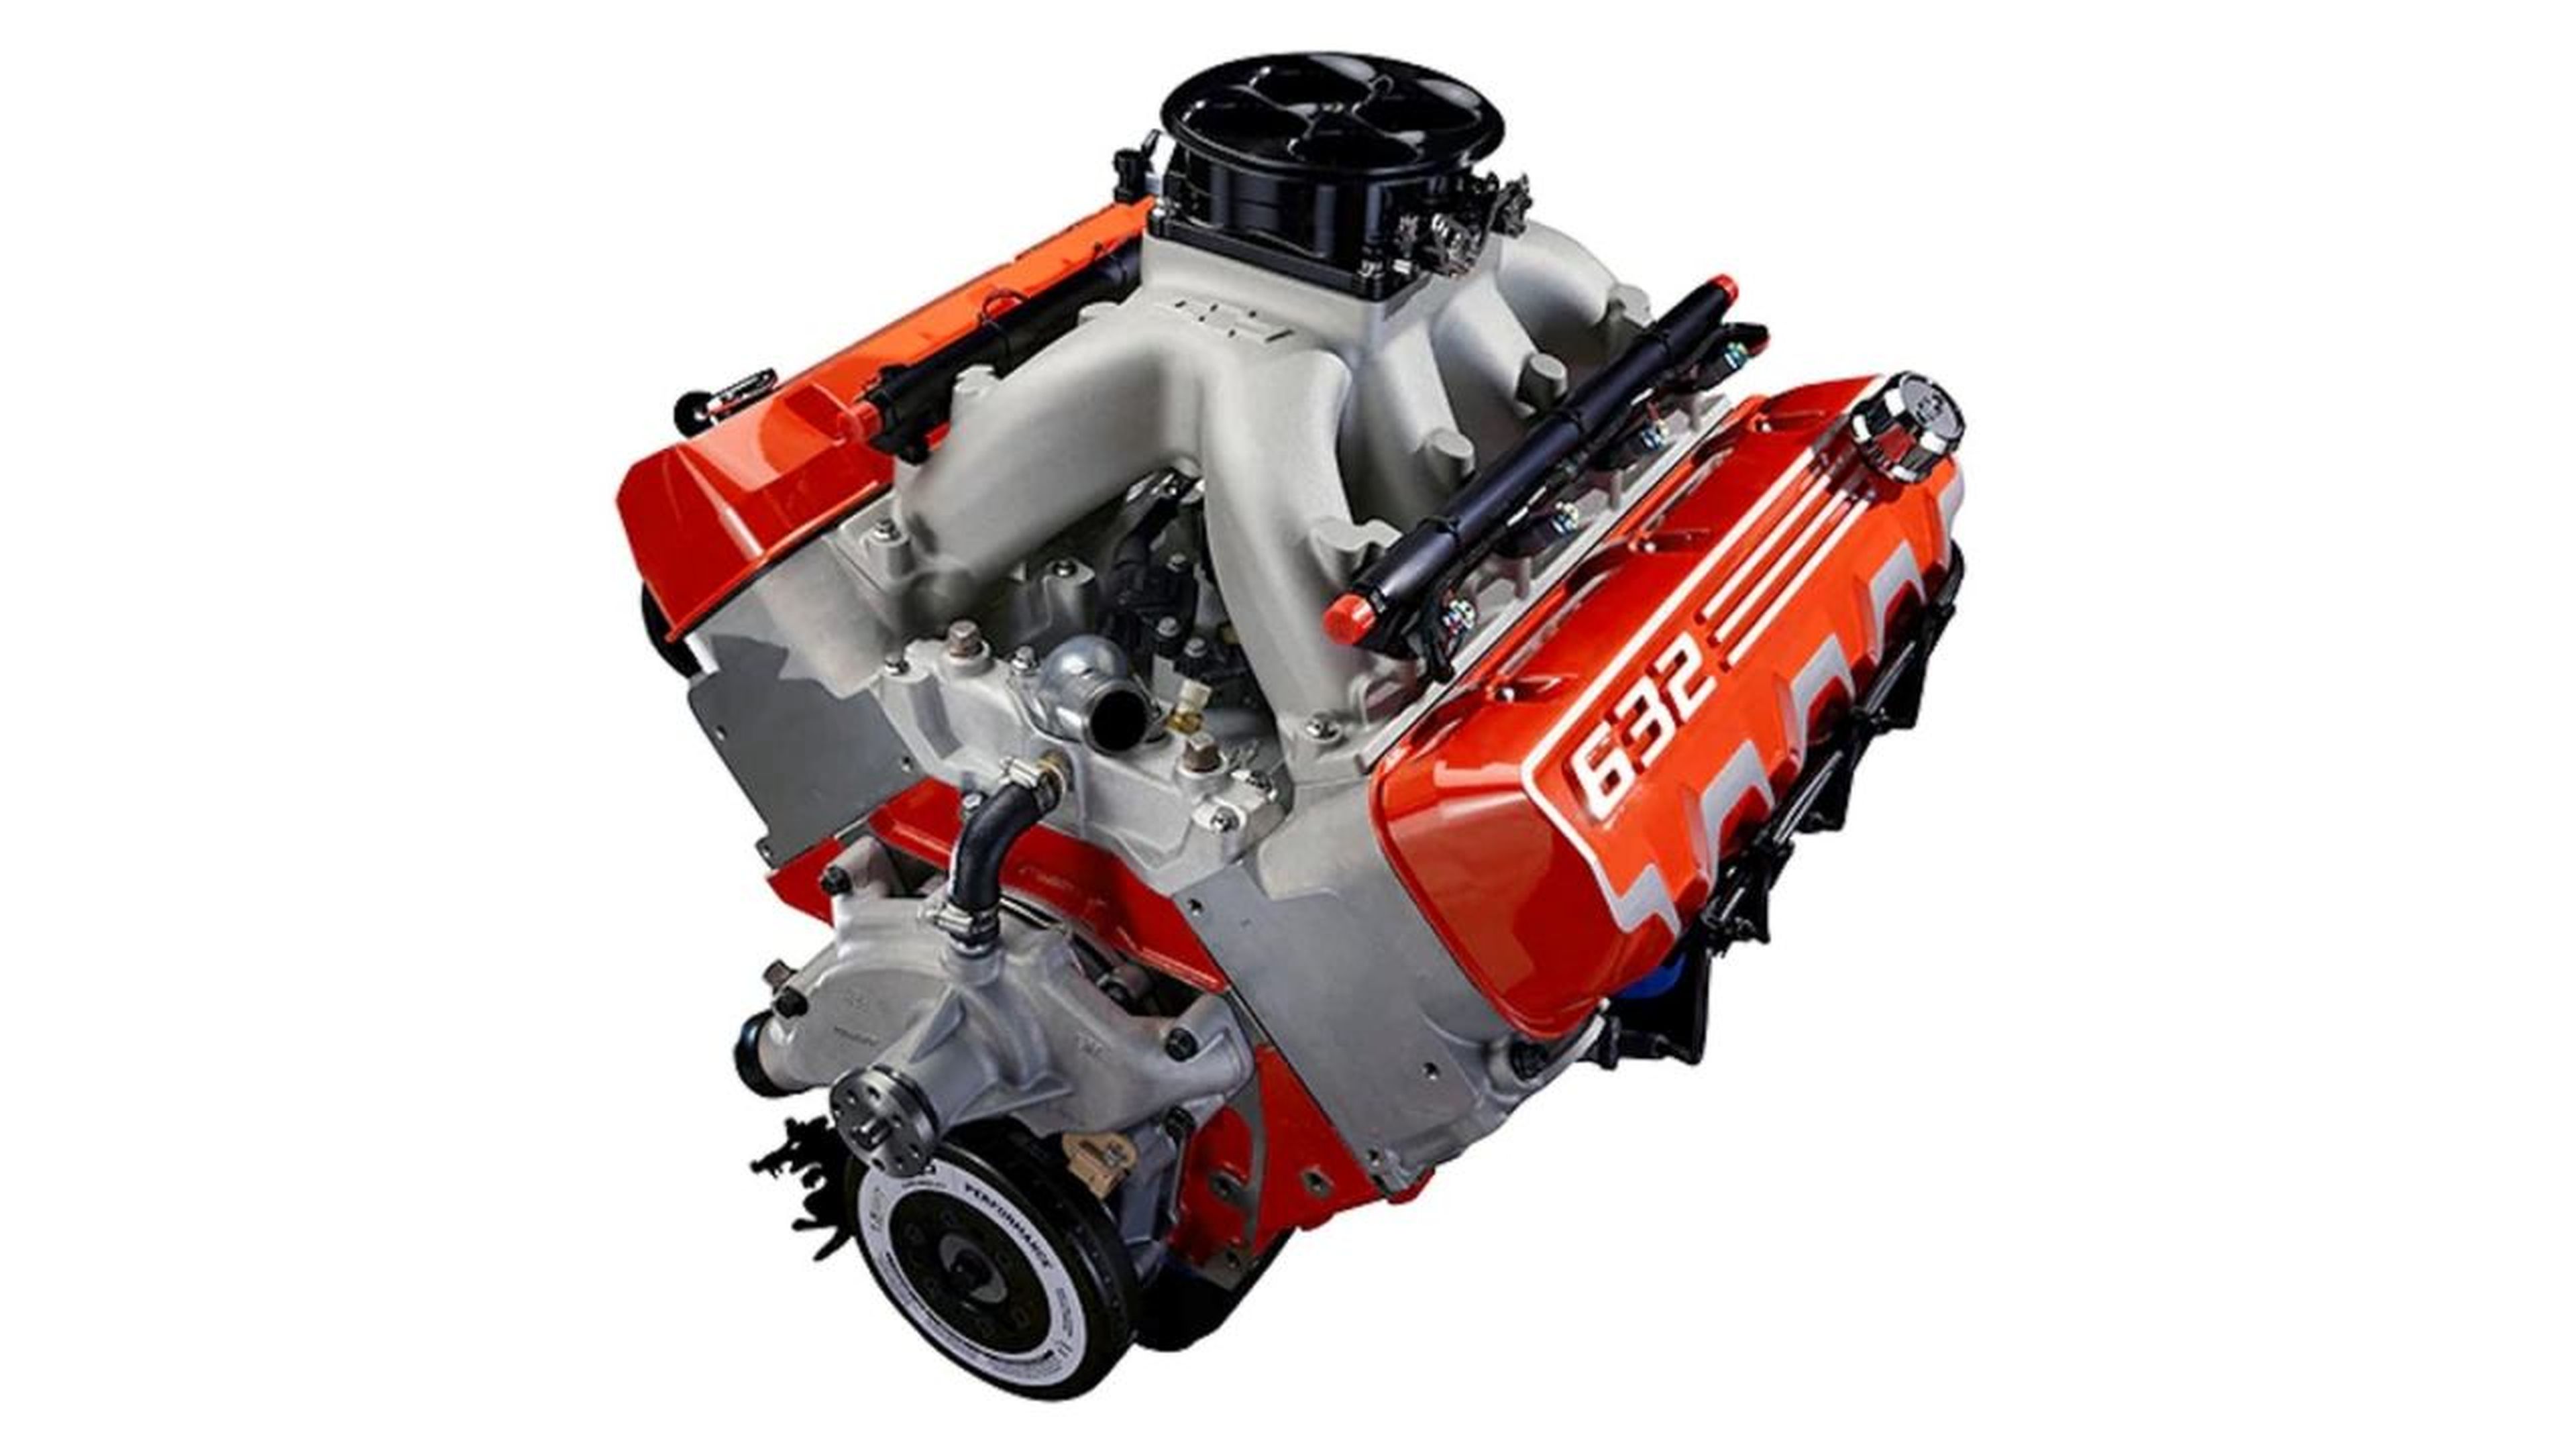 motor chevrolet zz632 v8